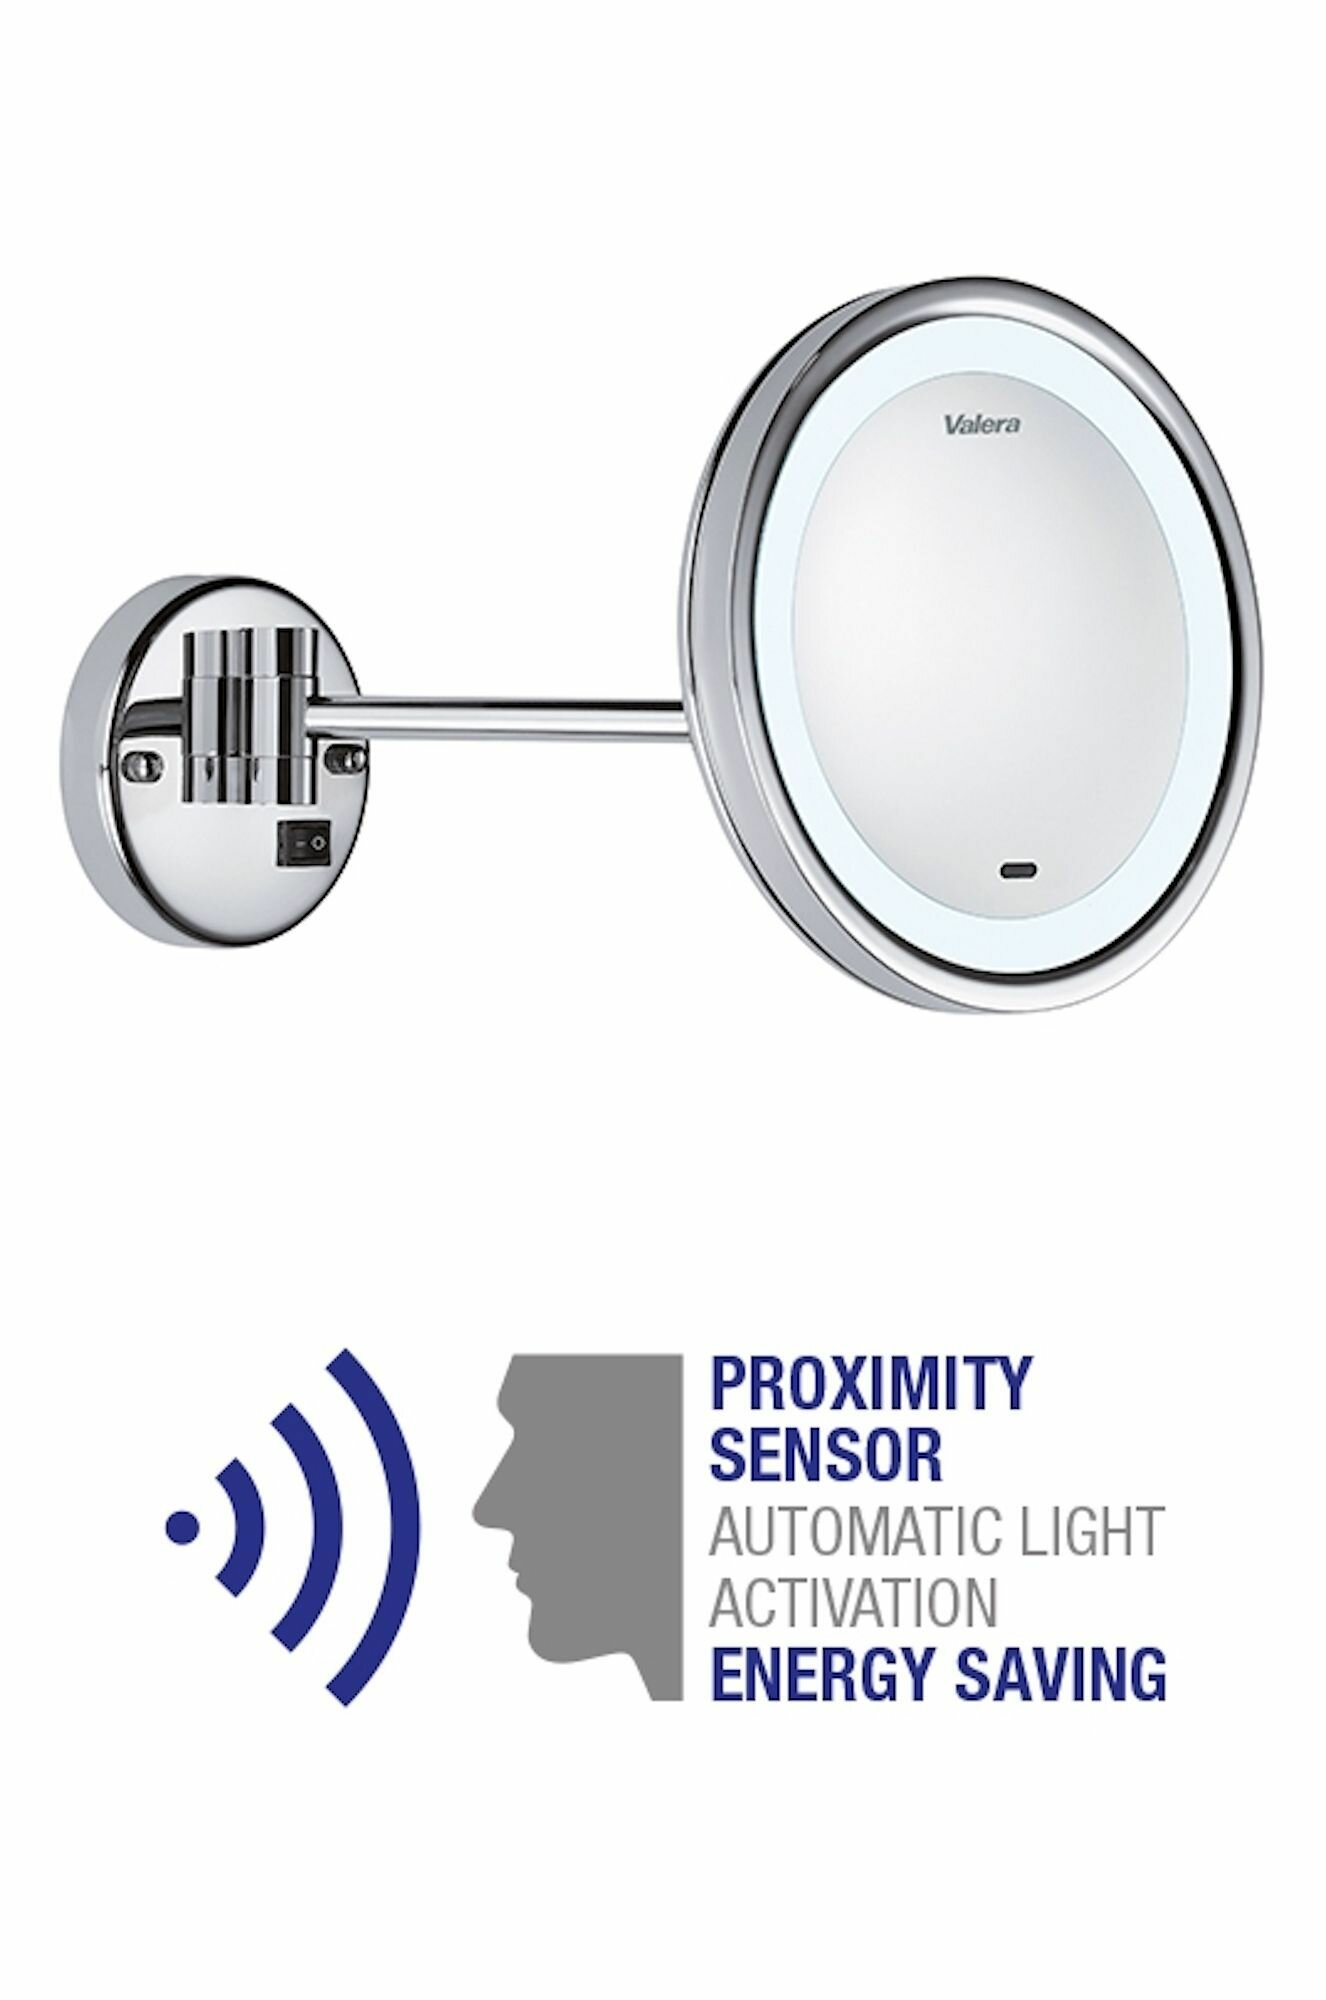 Зеркало настенное Valera Hospitality Optima Light Smart (207.09), трехкратное увеличение, автоматическая подсветка, поворот 360, хромированное покрытие